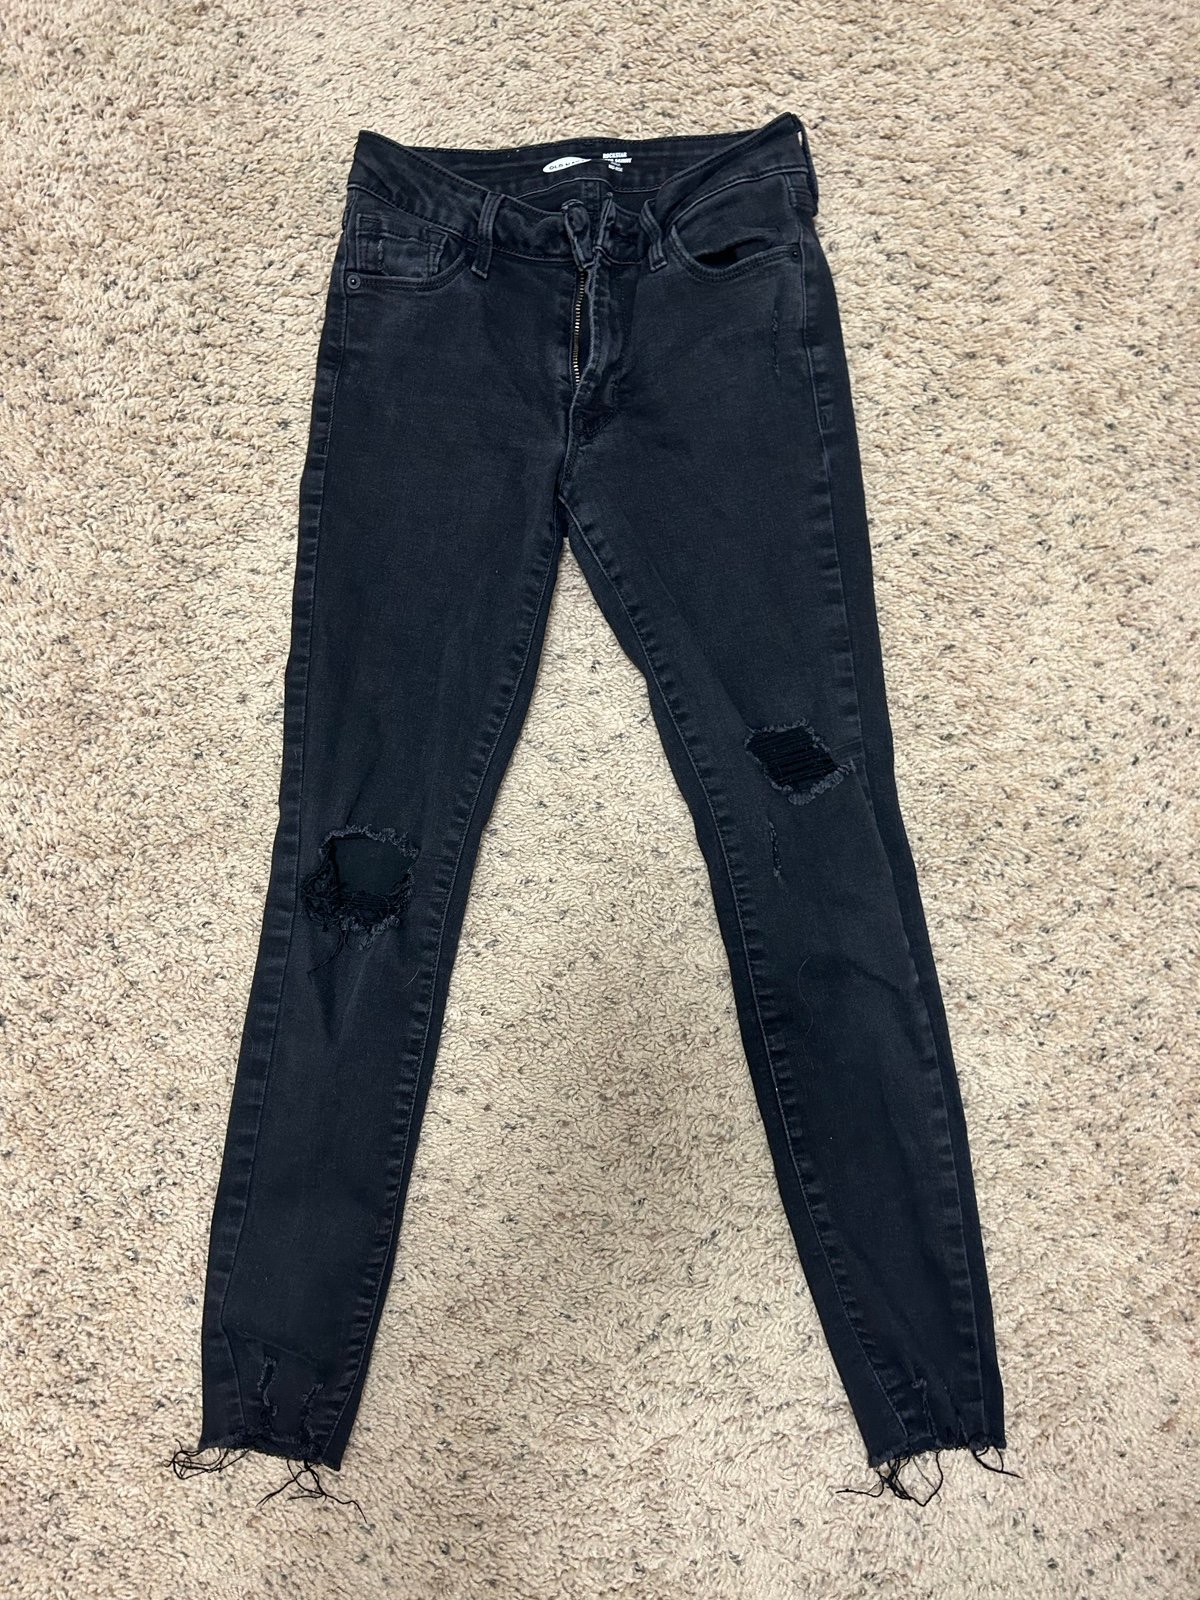 Buy Old Navy skinny jeans jtJoYguU1 US Outlet